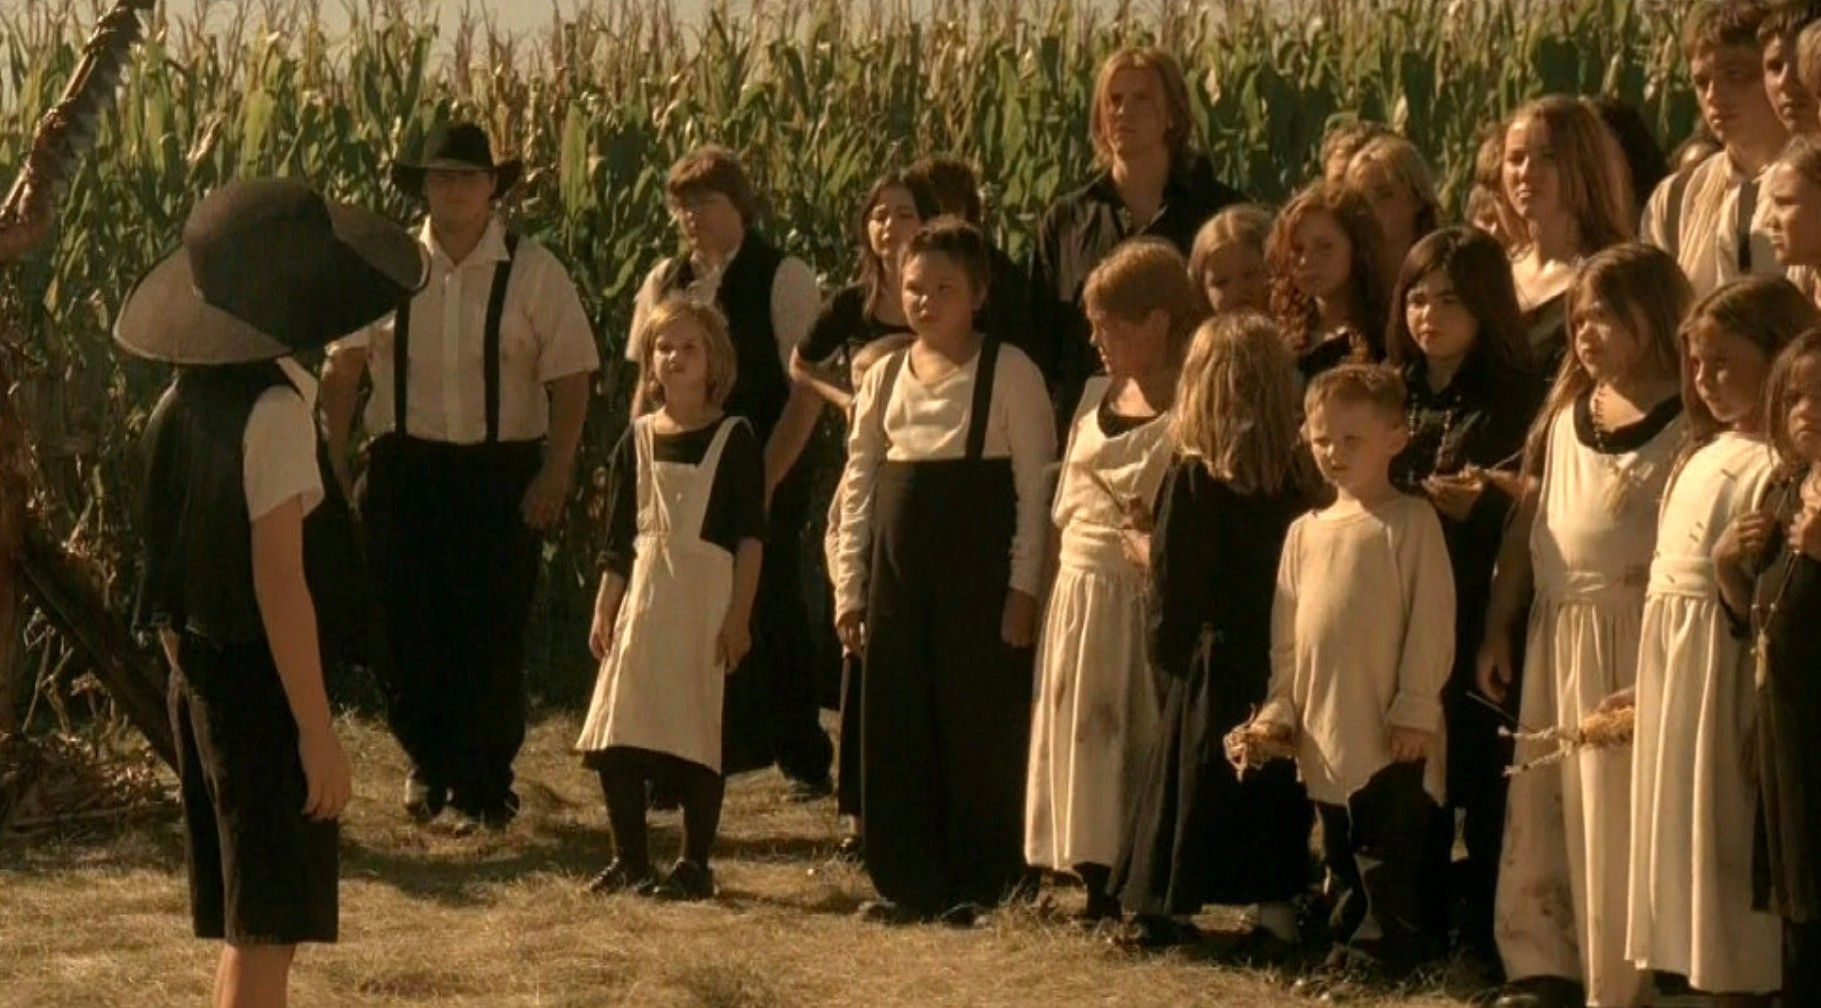 Children-of-the-Corn -Stephen King